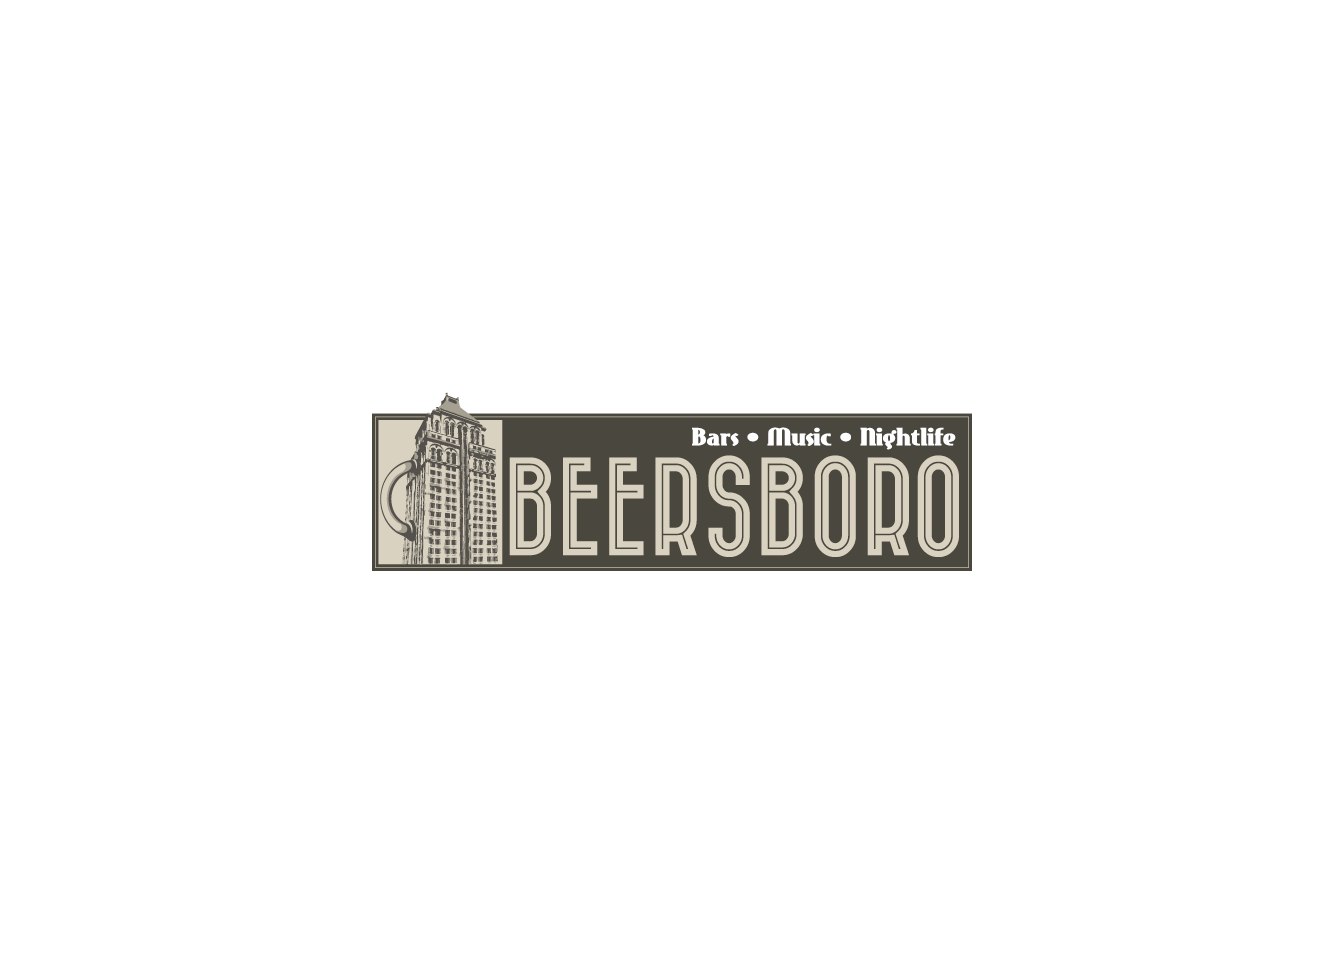 Beersboro